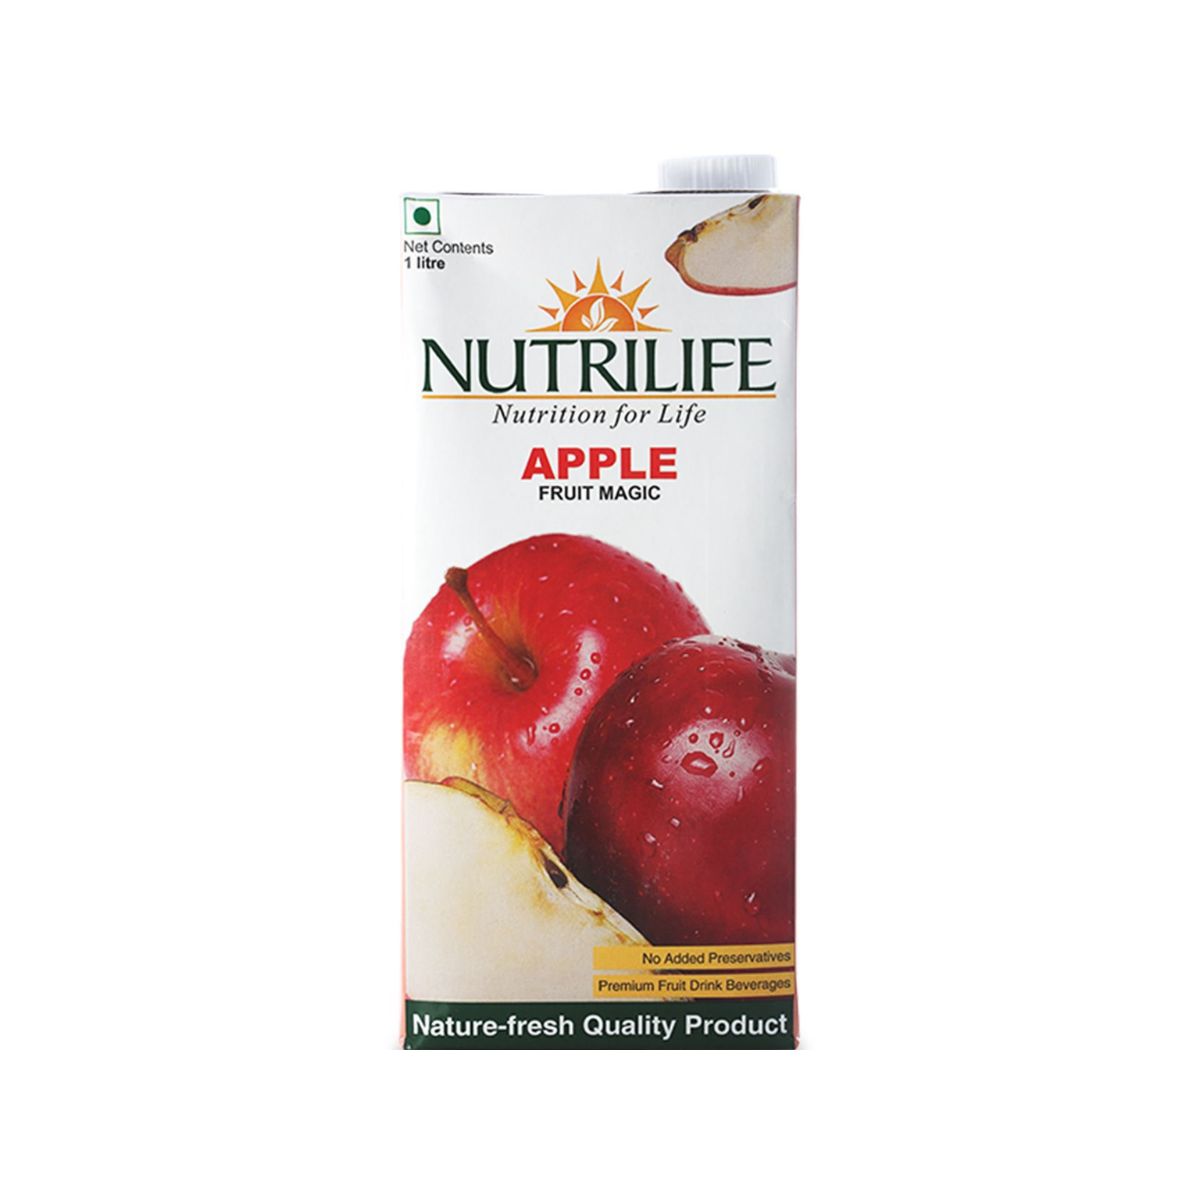 Nutrilife Apple Fruit Magic Juice - 1L